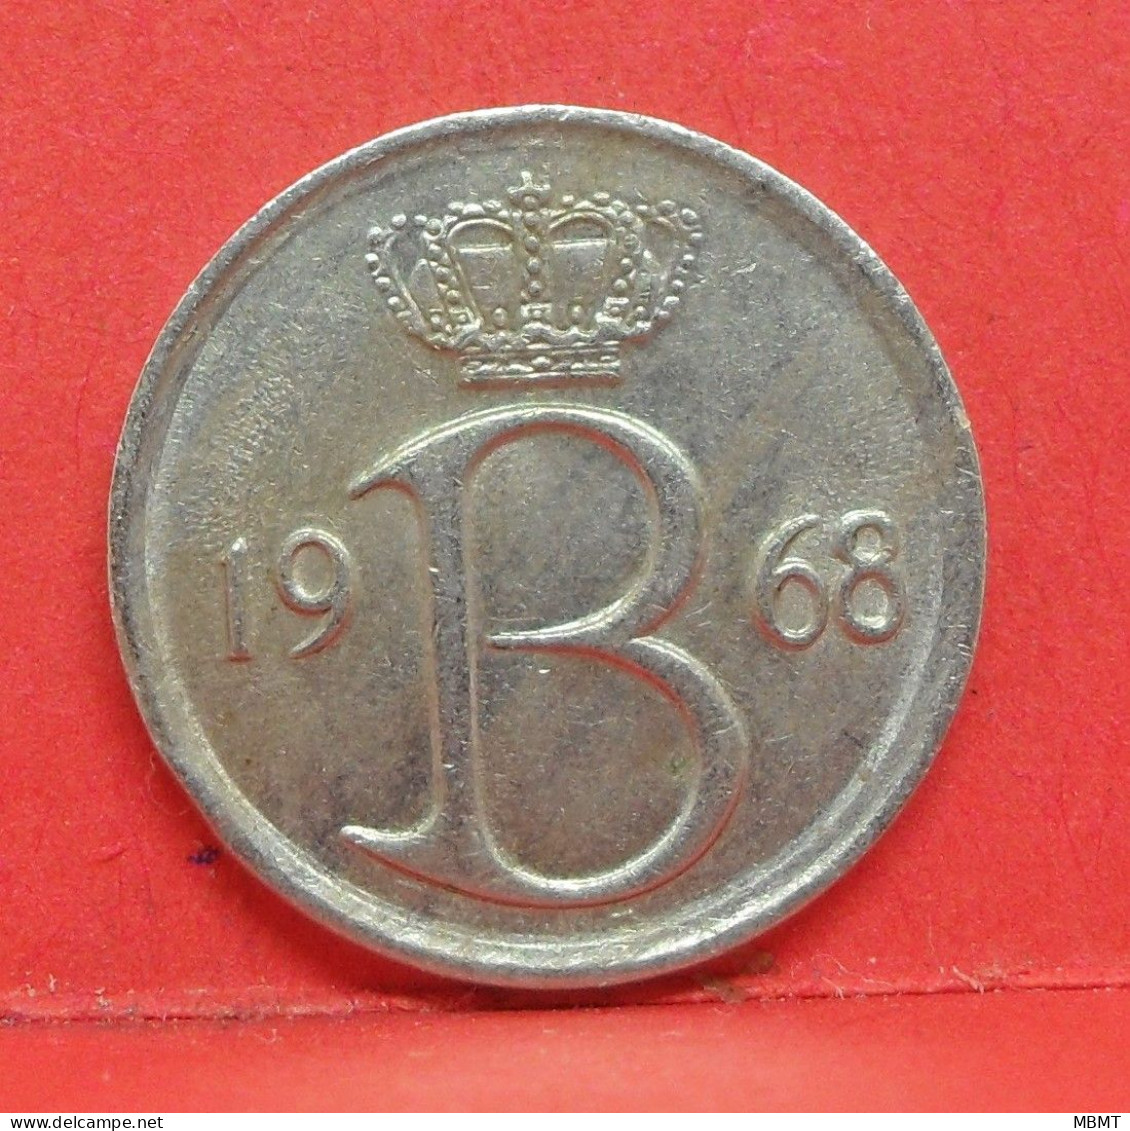 25 Centimes 1968 - TTB - Pièce Monnaie Belgique - Article N°1686 - 25 Centimes